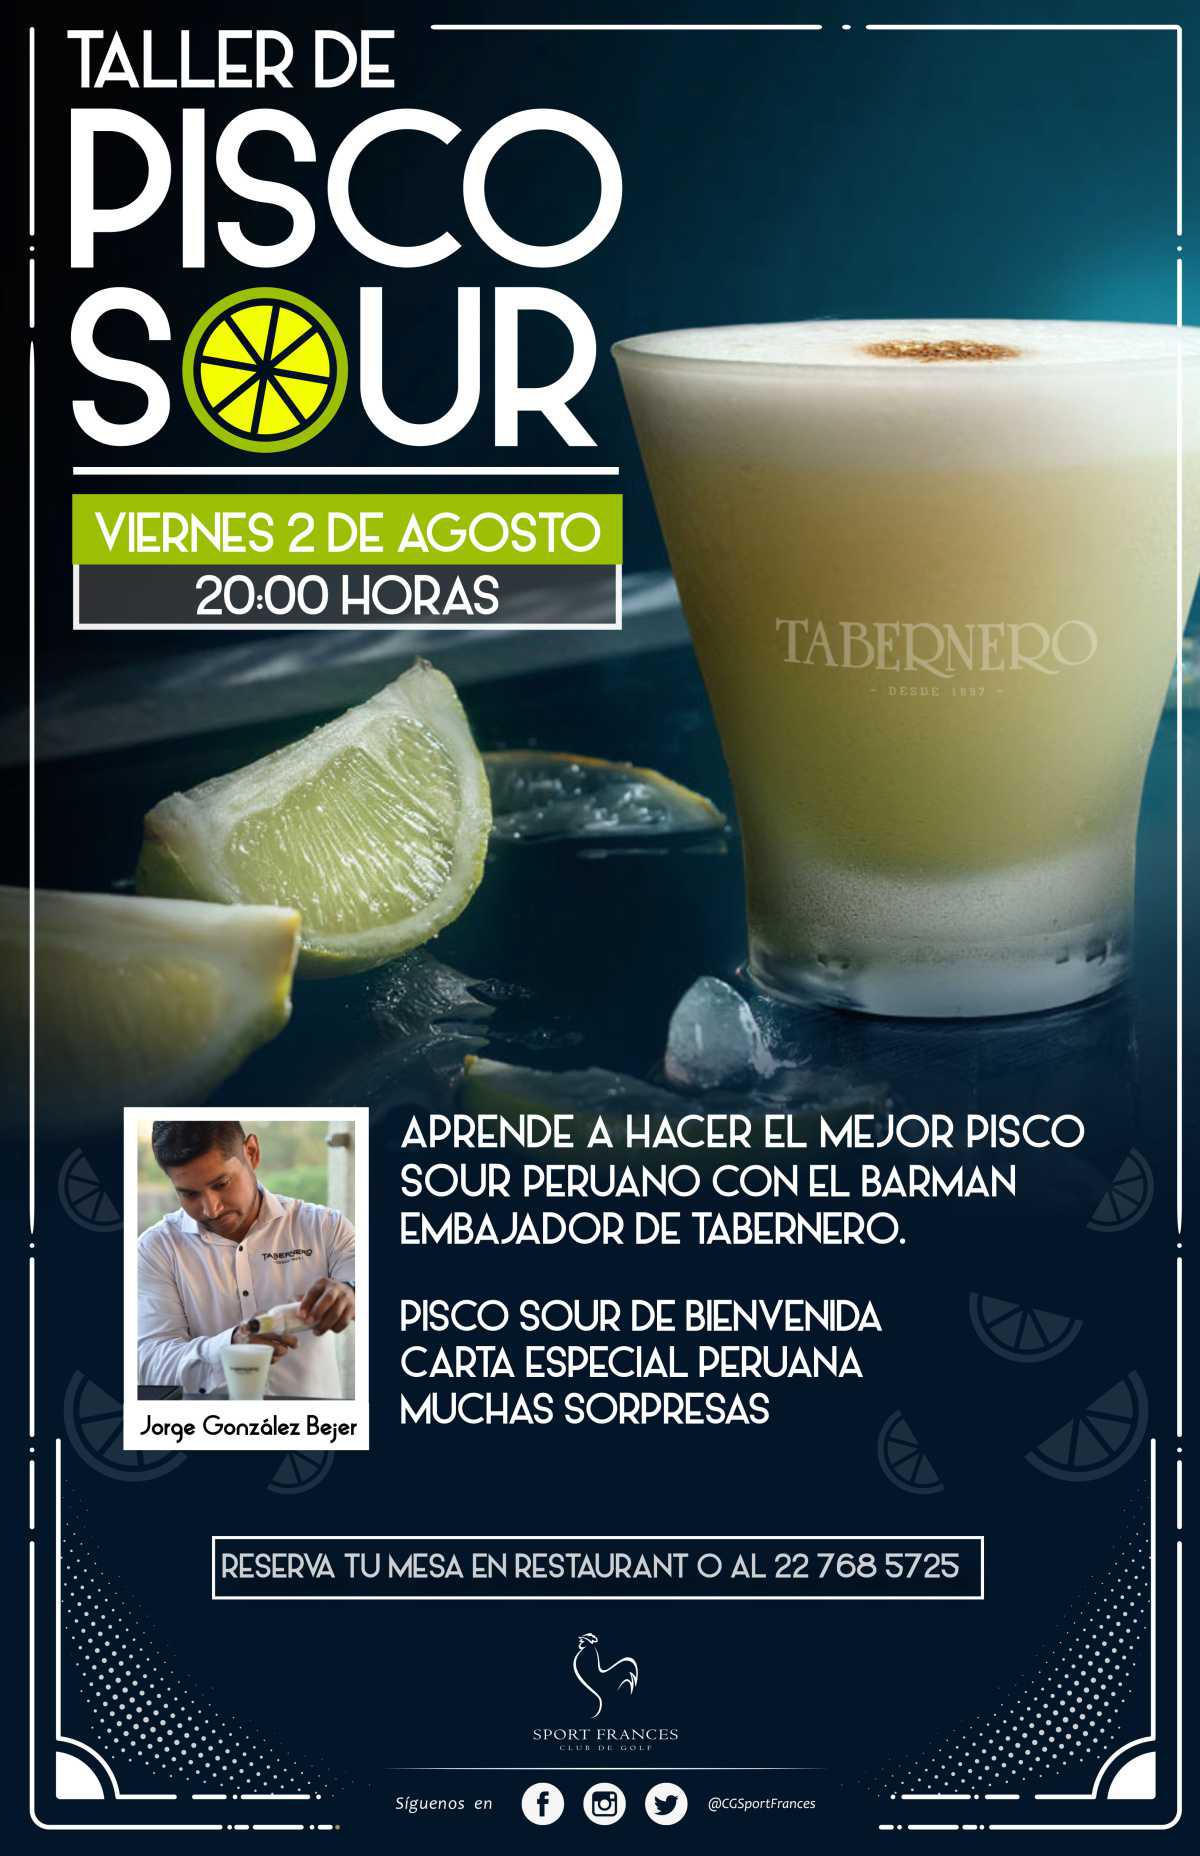 Los invitamos a participar de nuestro "Taller de Pisco Sour" y aprender del mejor barman de Sudamérica